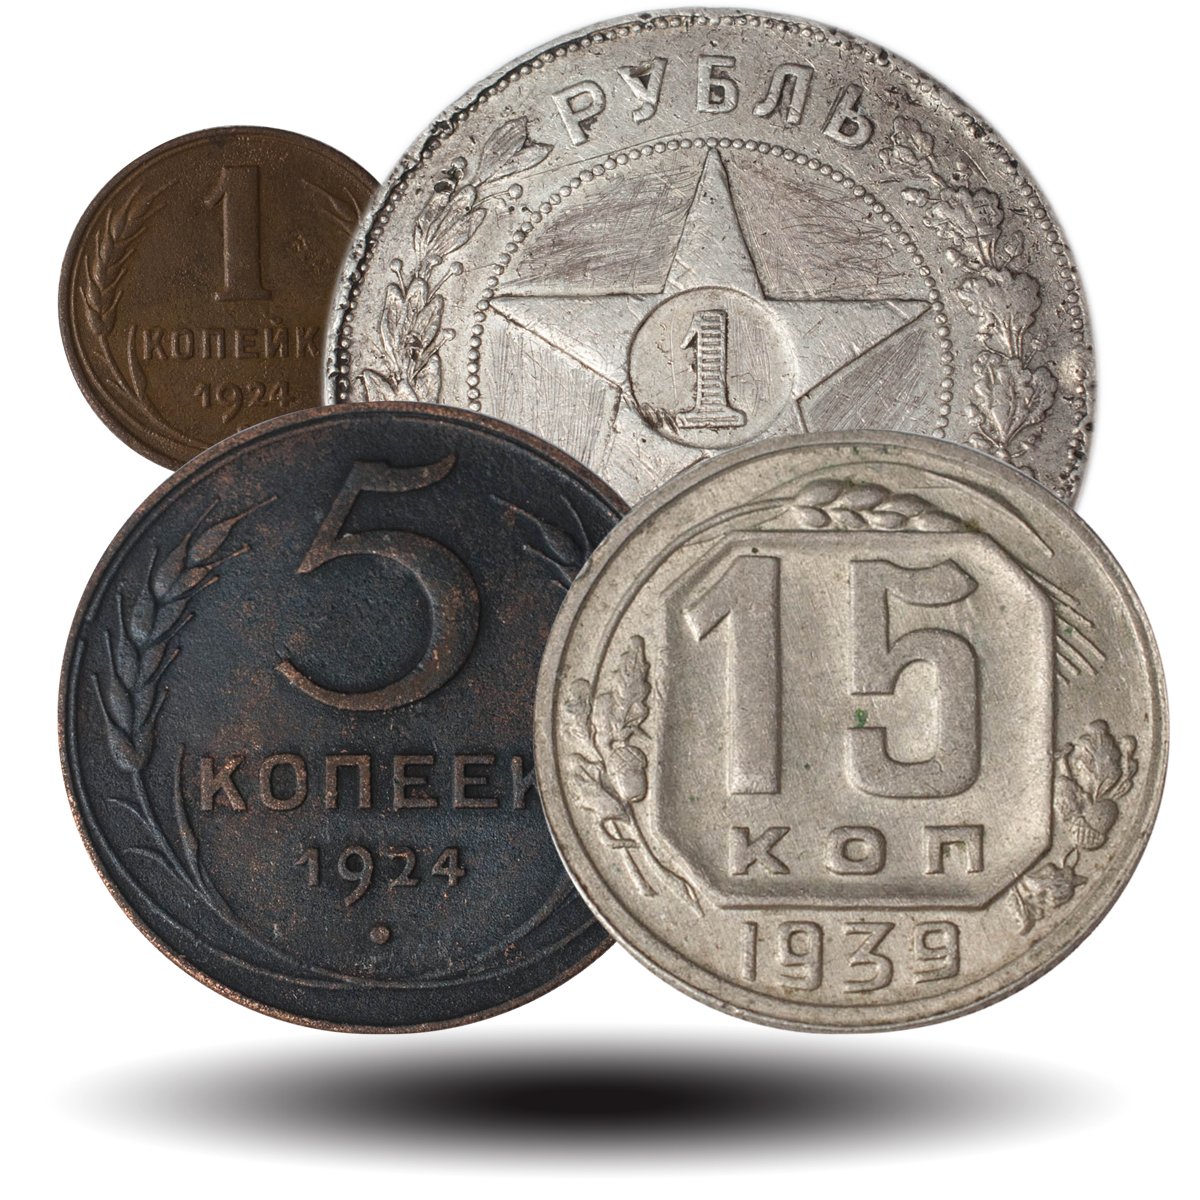 Монеты РСФСР/ СССР 1921 - 1957 годов выпуска